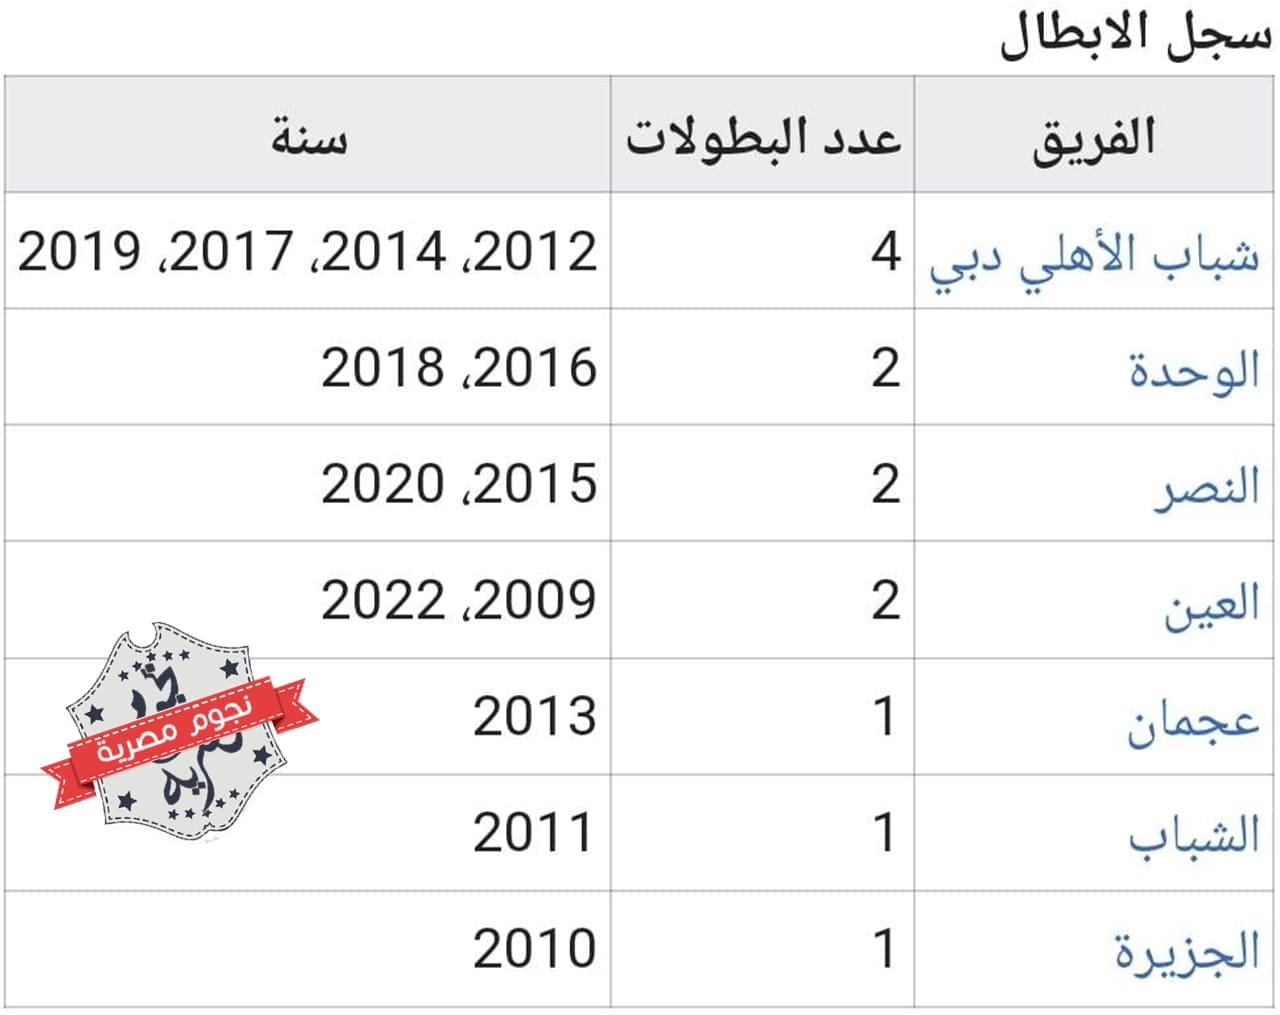 قائمة الأندية المتوجة بلقب كأس رابطة المحترفين الإماراتية (كأس الخليج العربي الإماراتي أو كأس مصر أبوظبي الإسلامي) قبل النسخة 15 لموسم 2022_2023